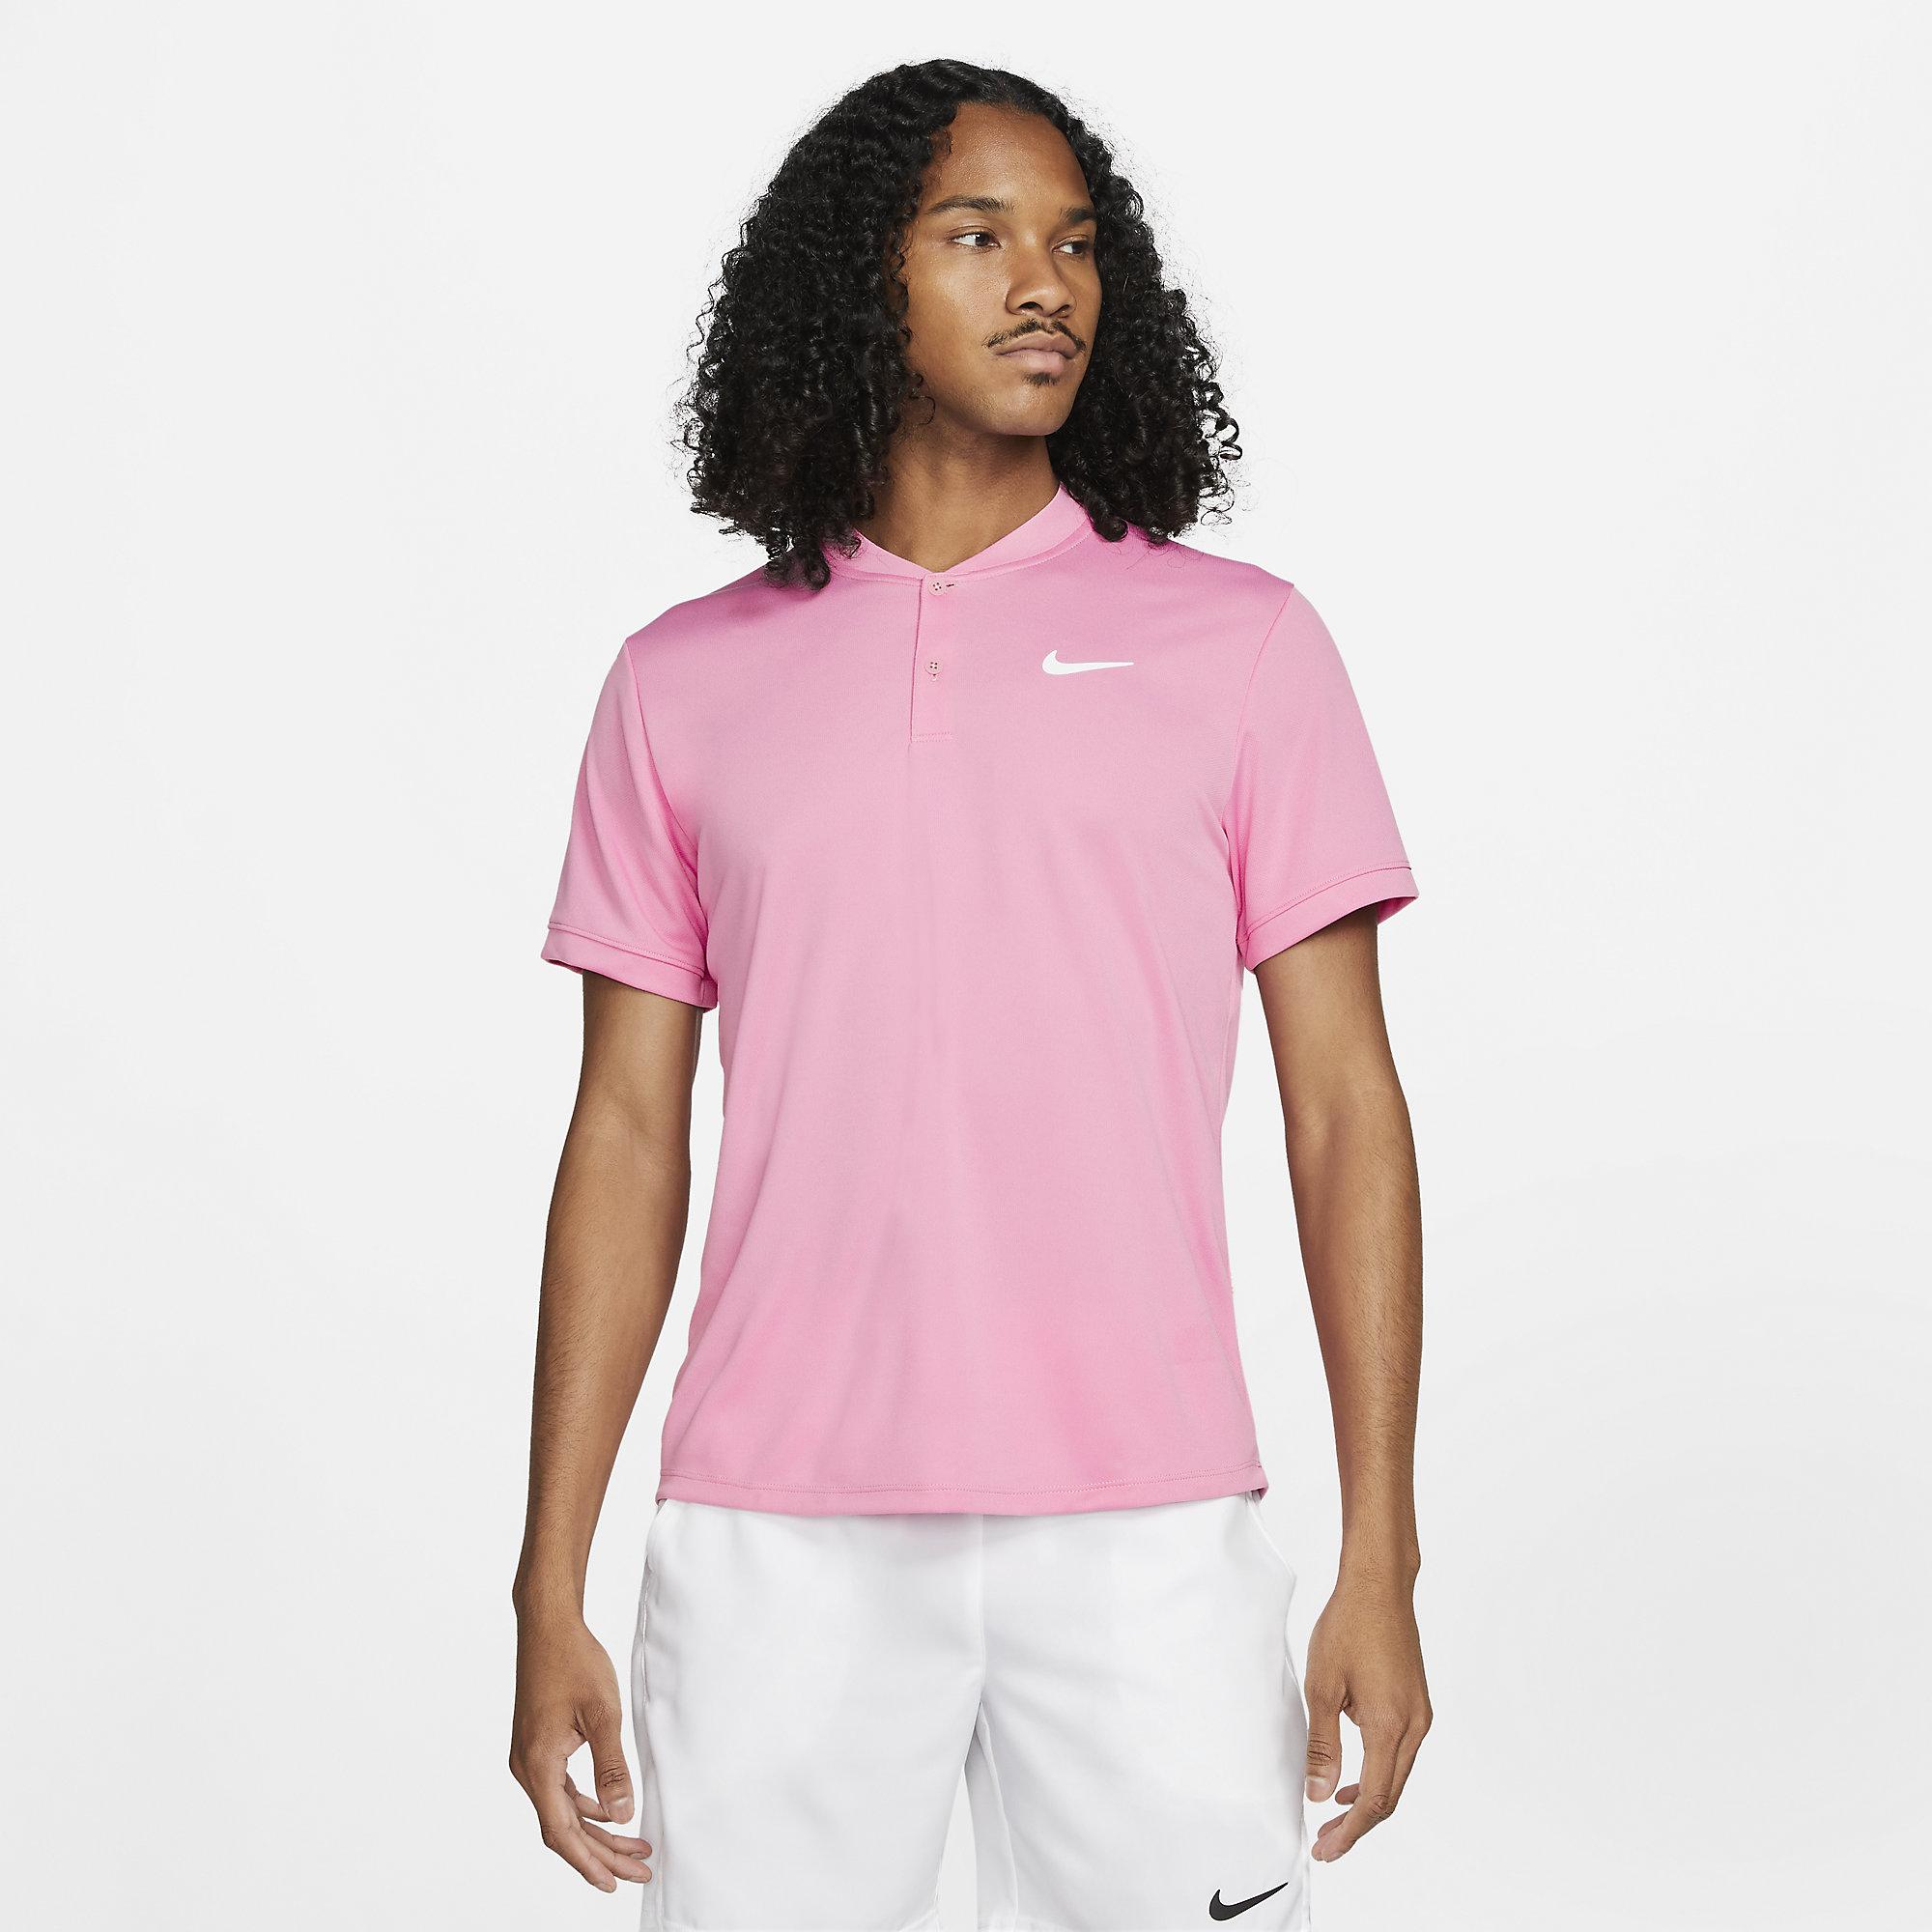 Nike Mens Dri-FIT Polo - Elemental Pink - Tennisnuts.com